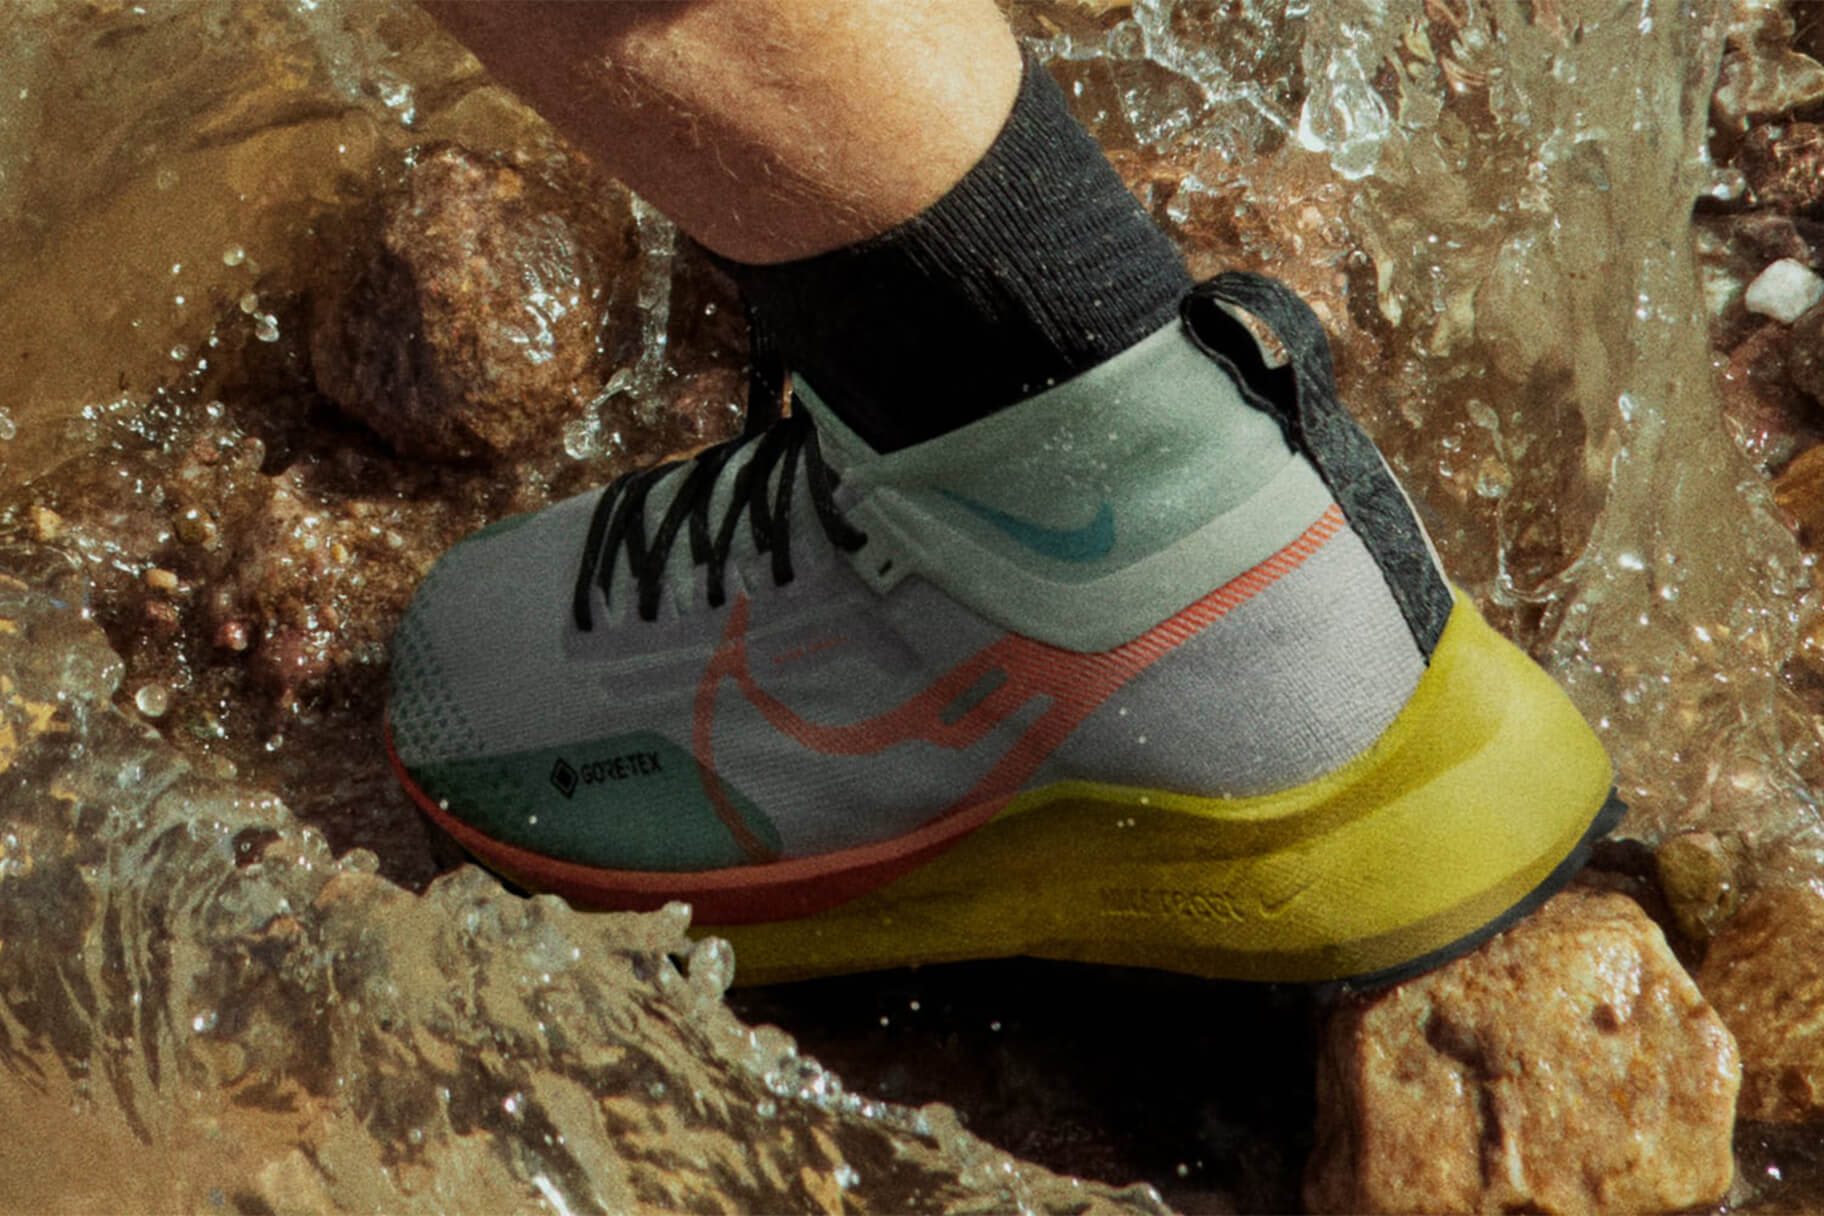 Waterdichte Nike hardloopschoenen voor natte omstandigheden